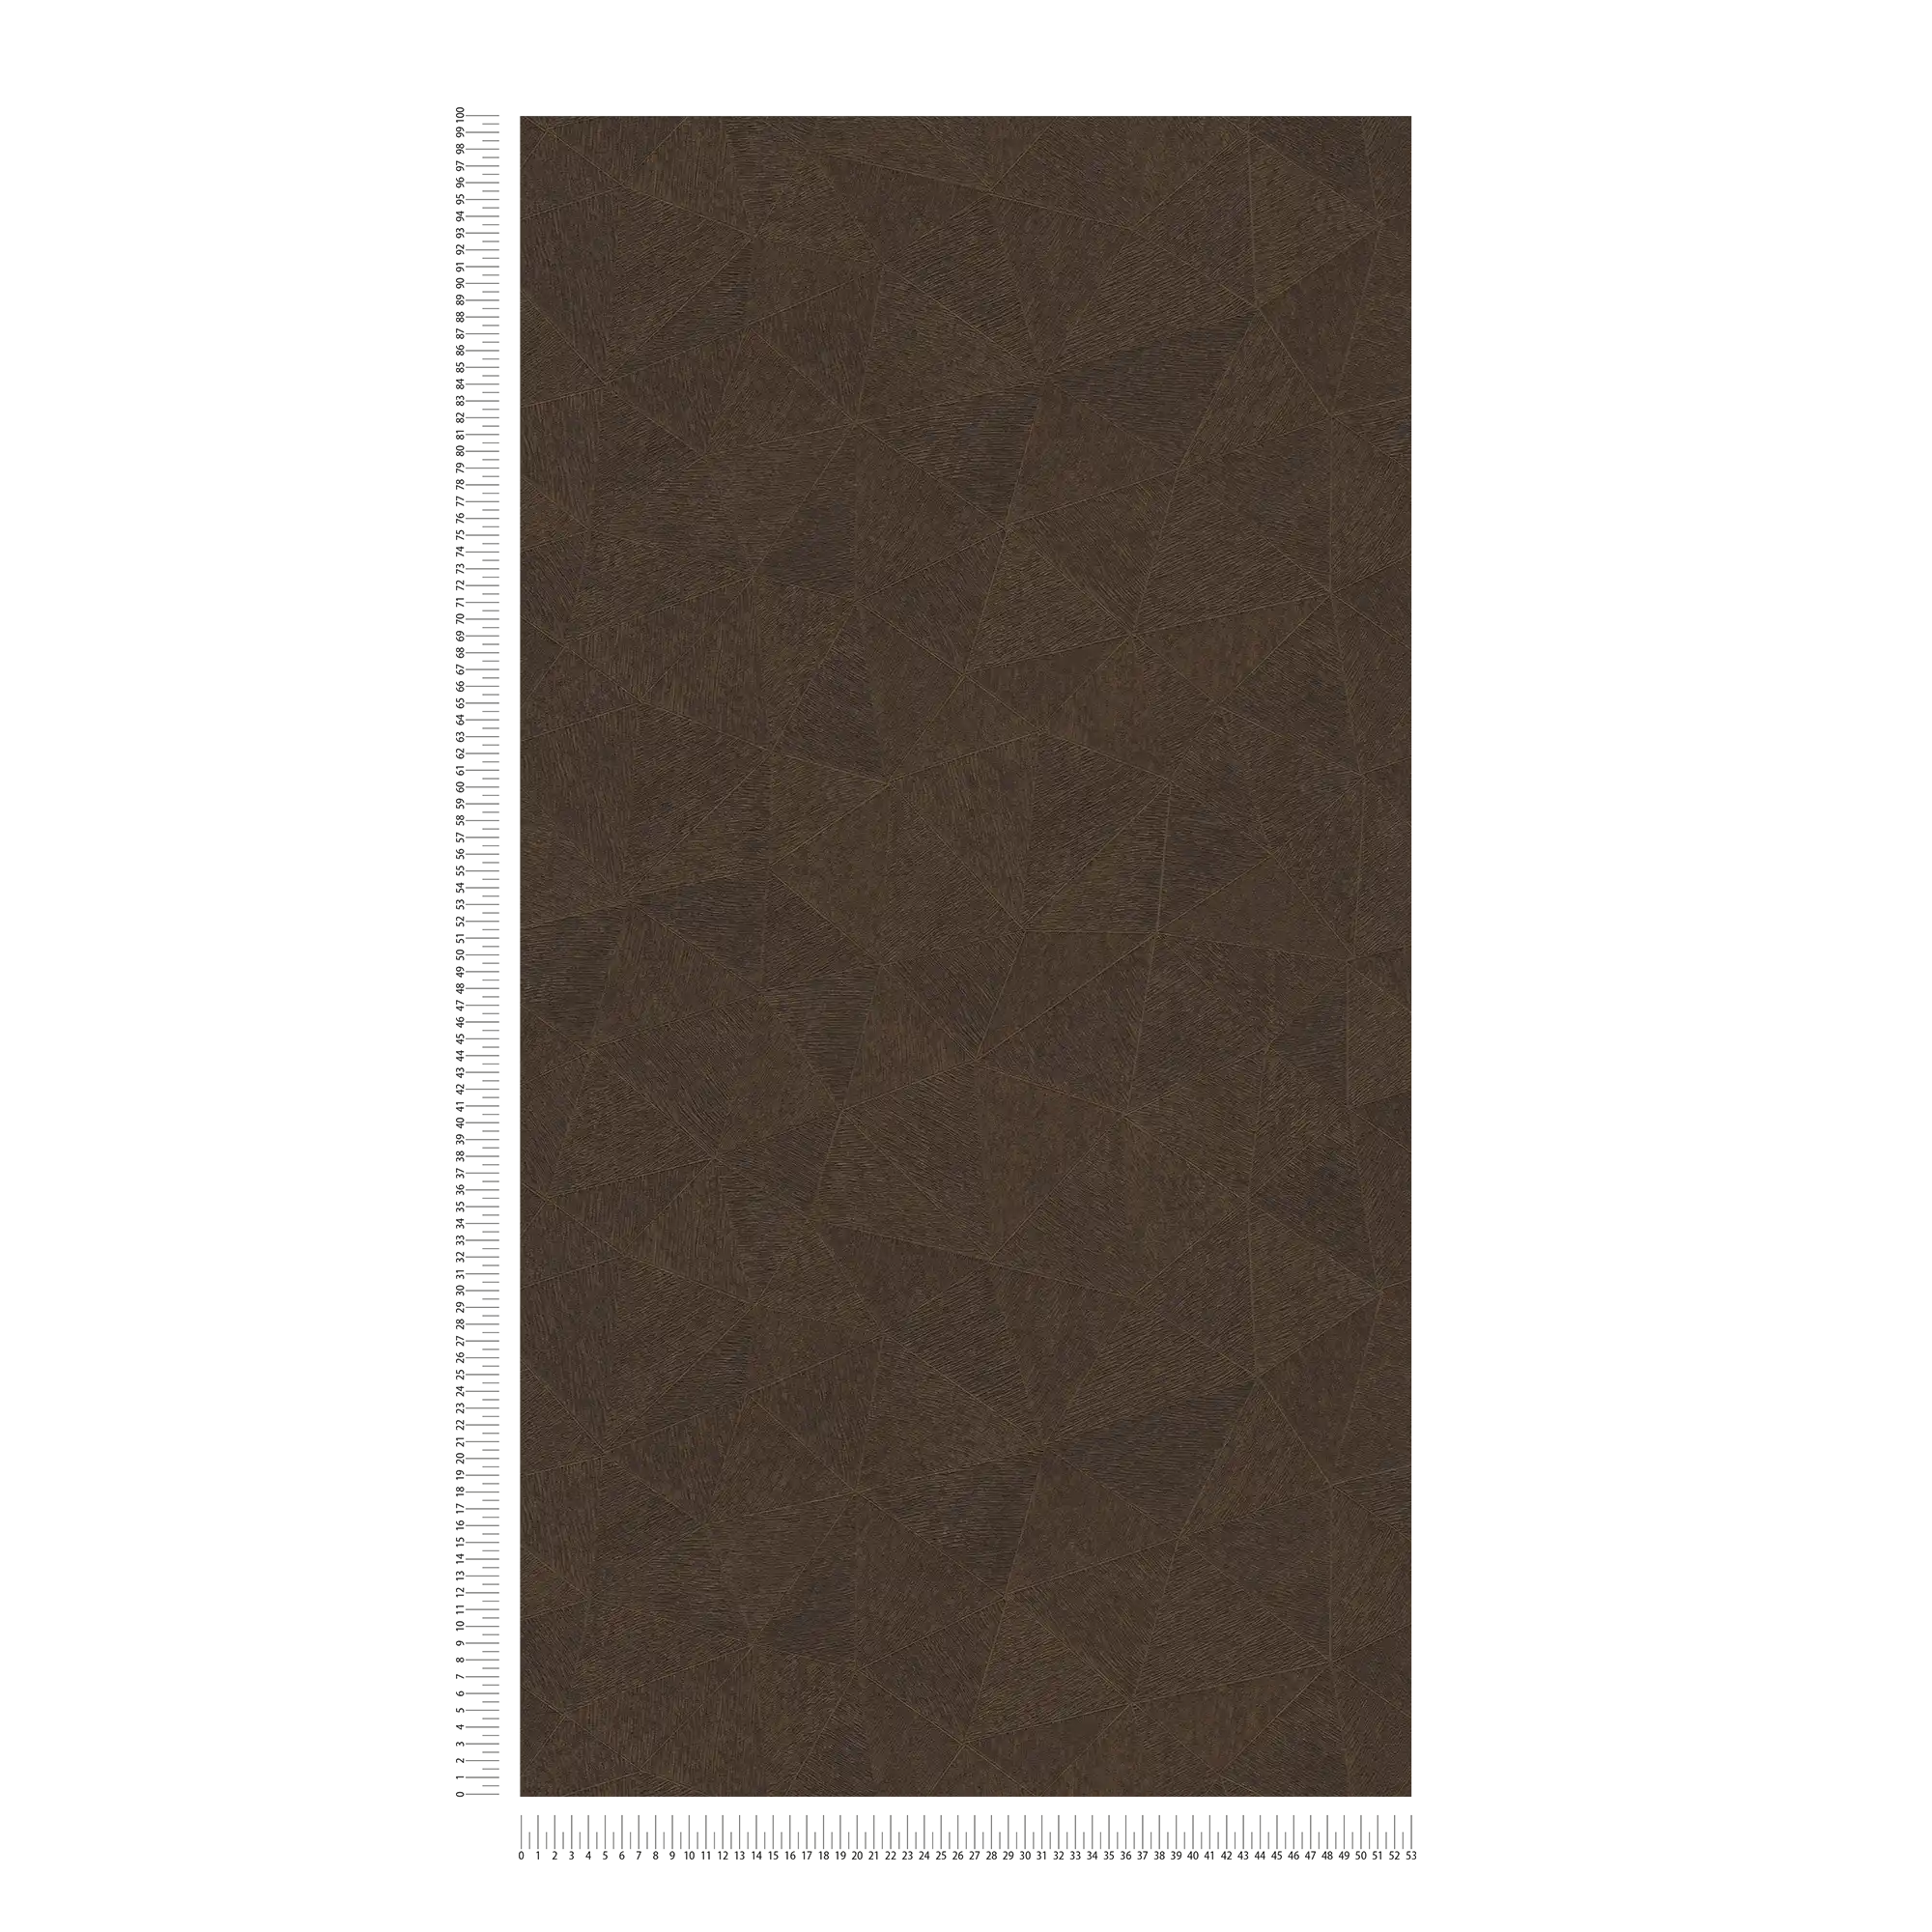             Wallpaper with triangle pattern in dark shades - Dark brown
        